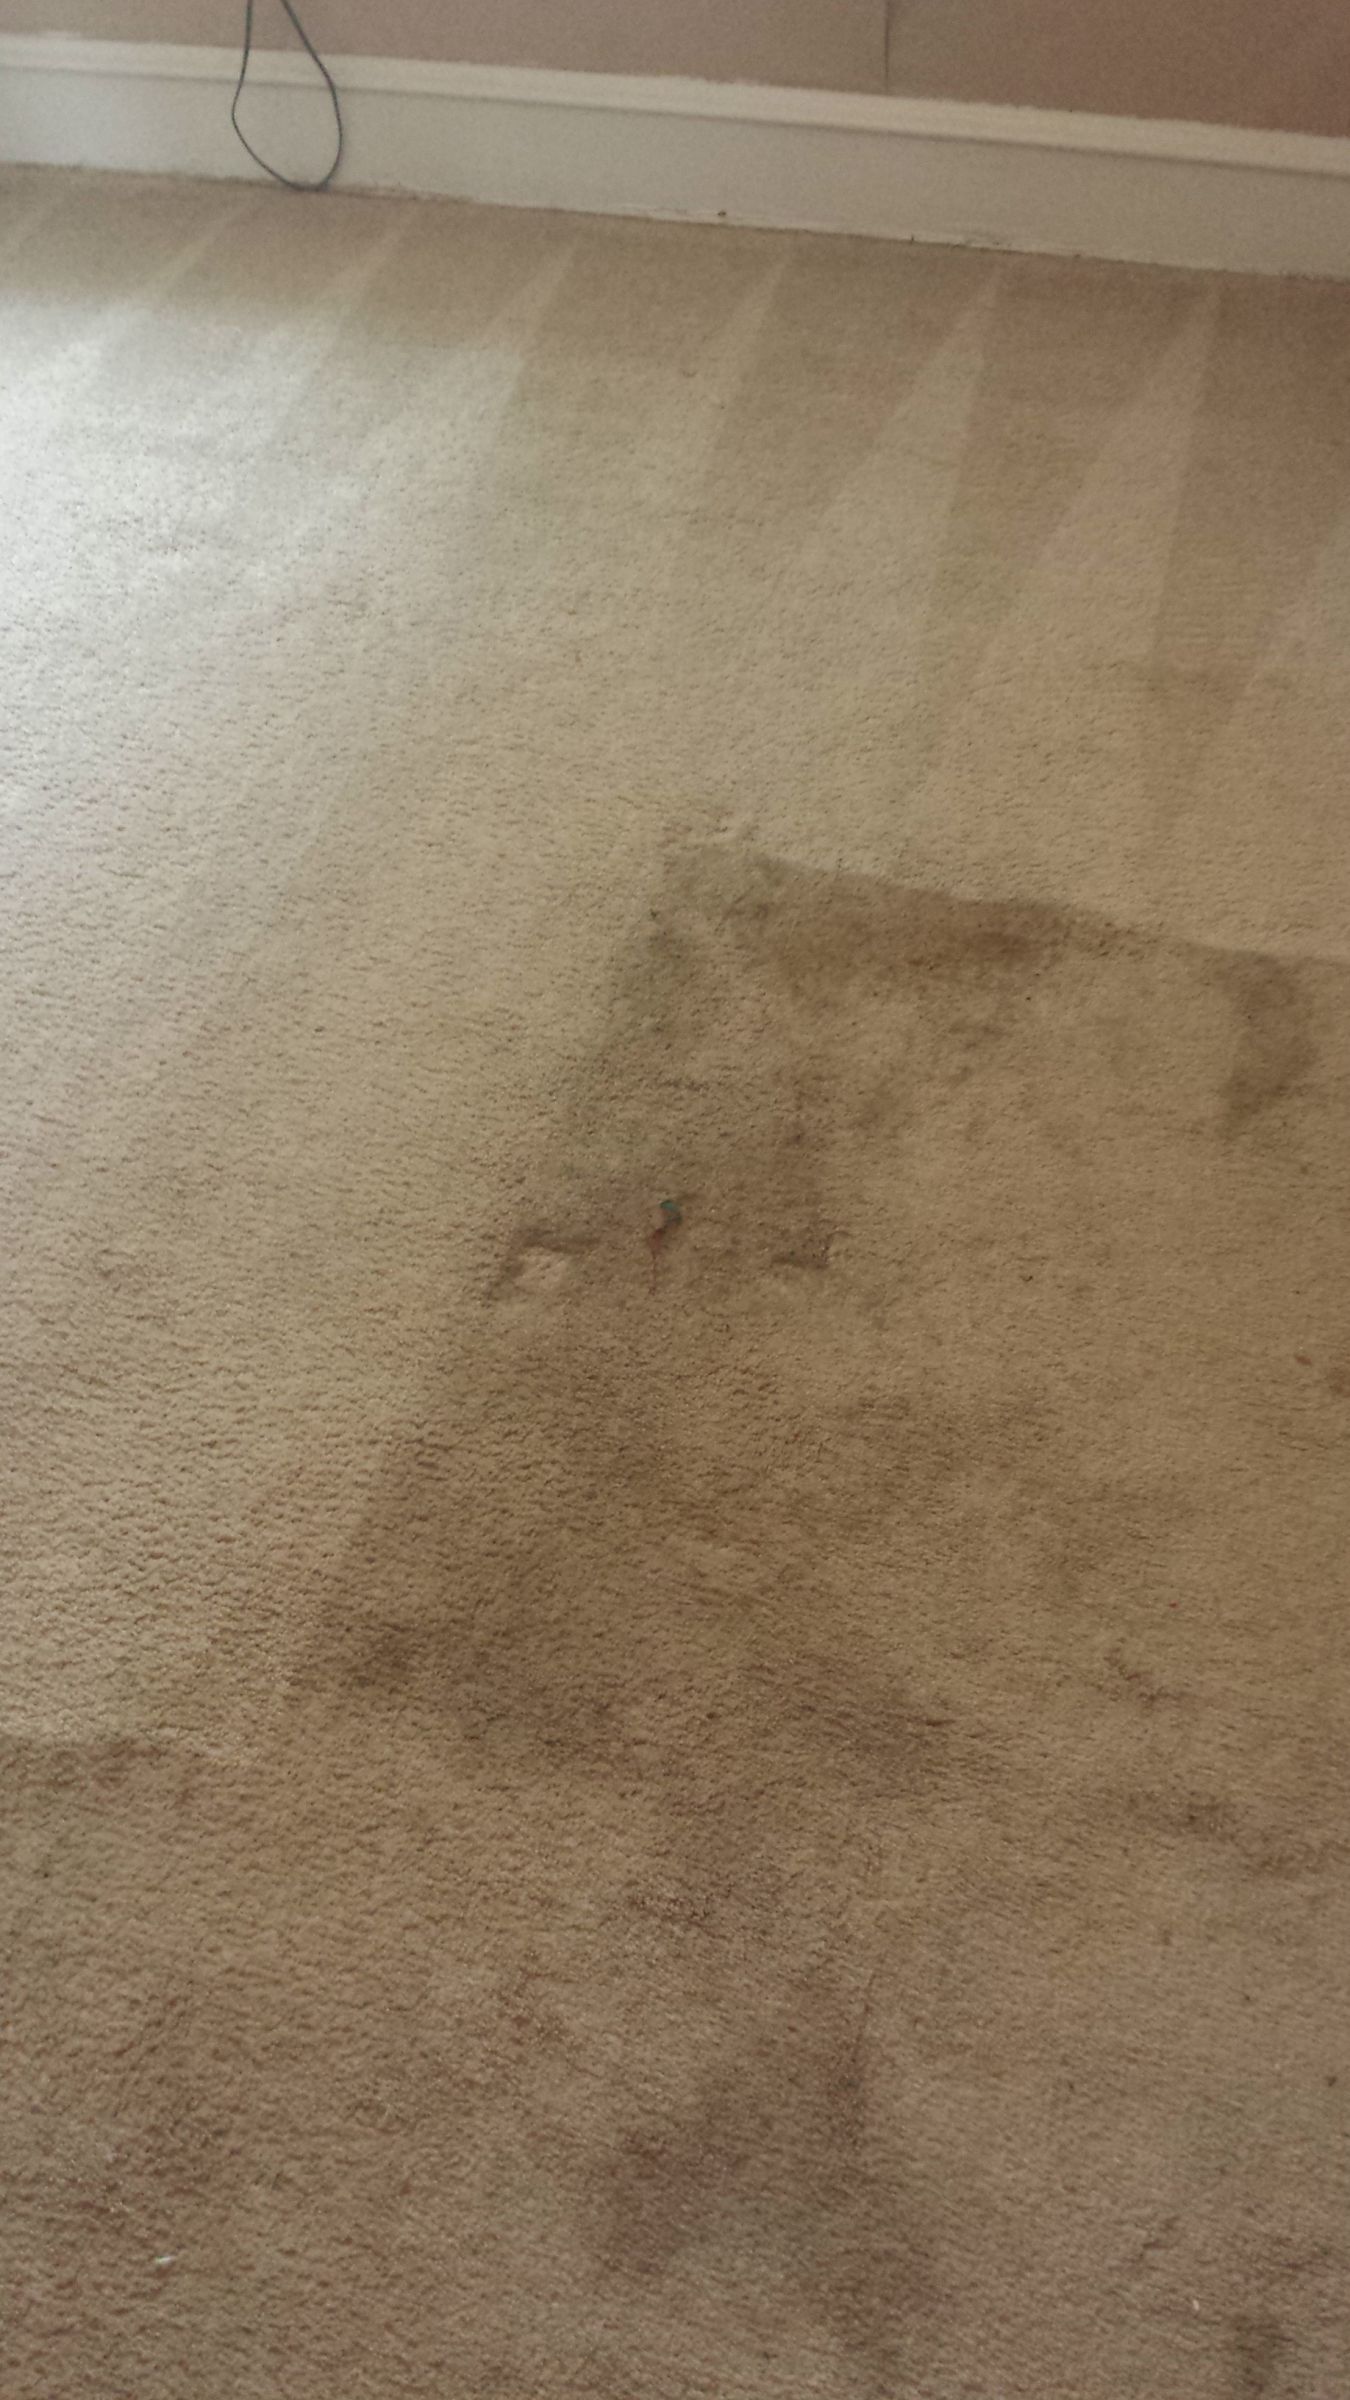 Mullica Hill Carpet Cleaners